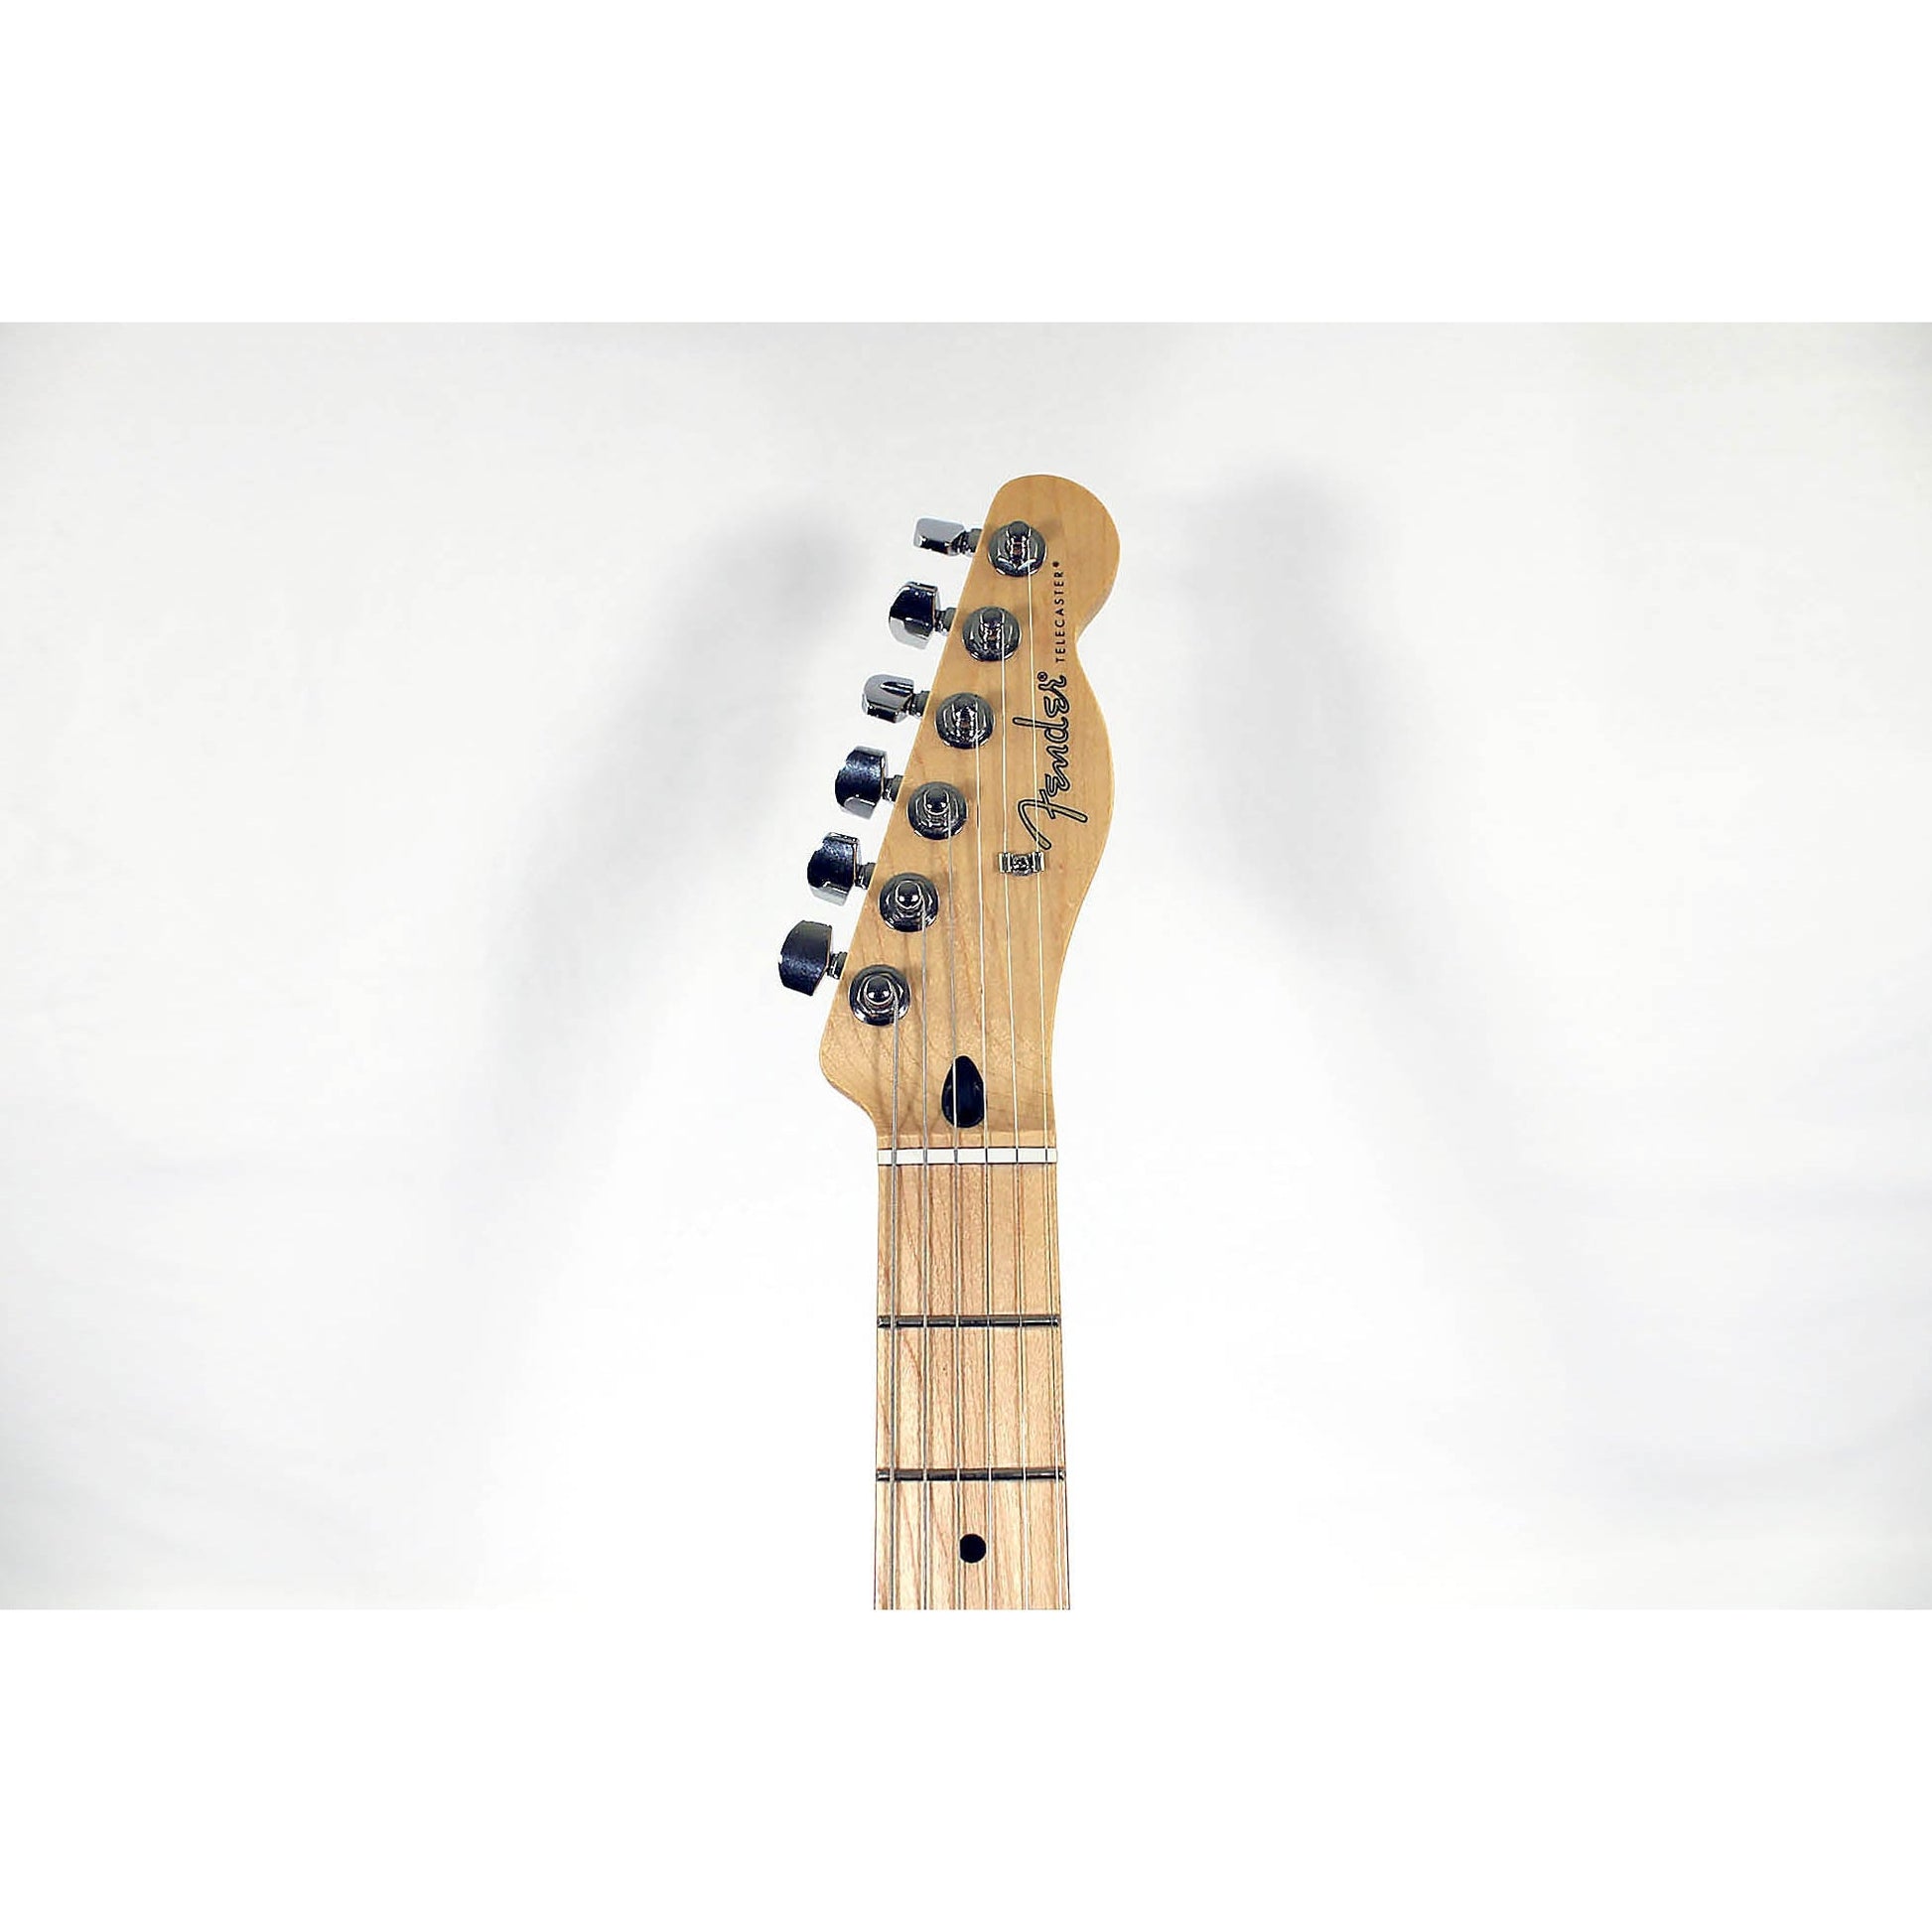 Fender Player Series Telecaster - Black - Leitz Music-885978909919-0145212506